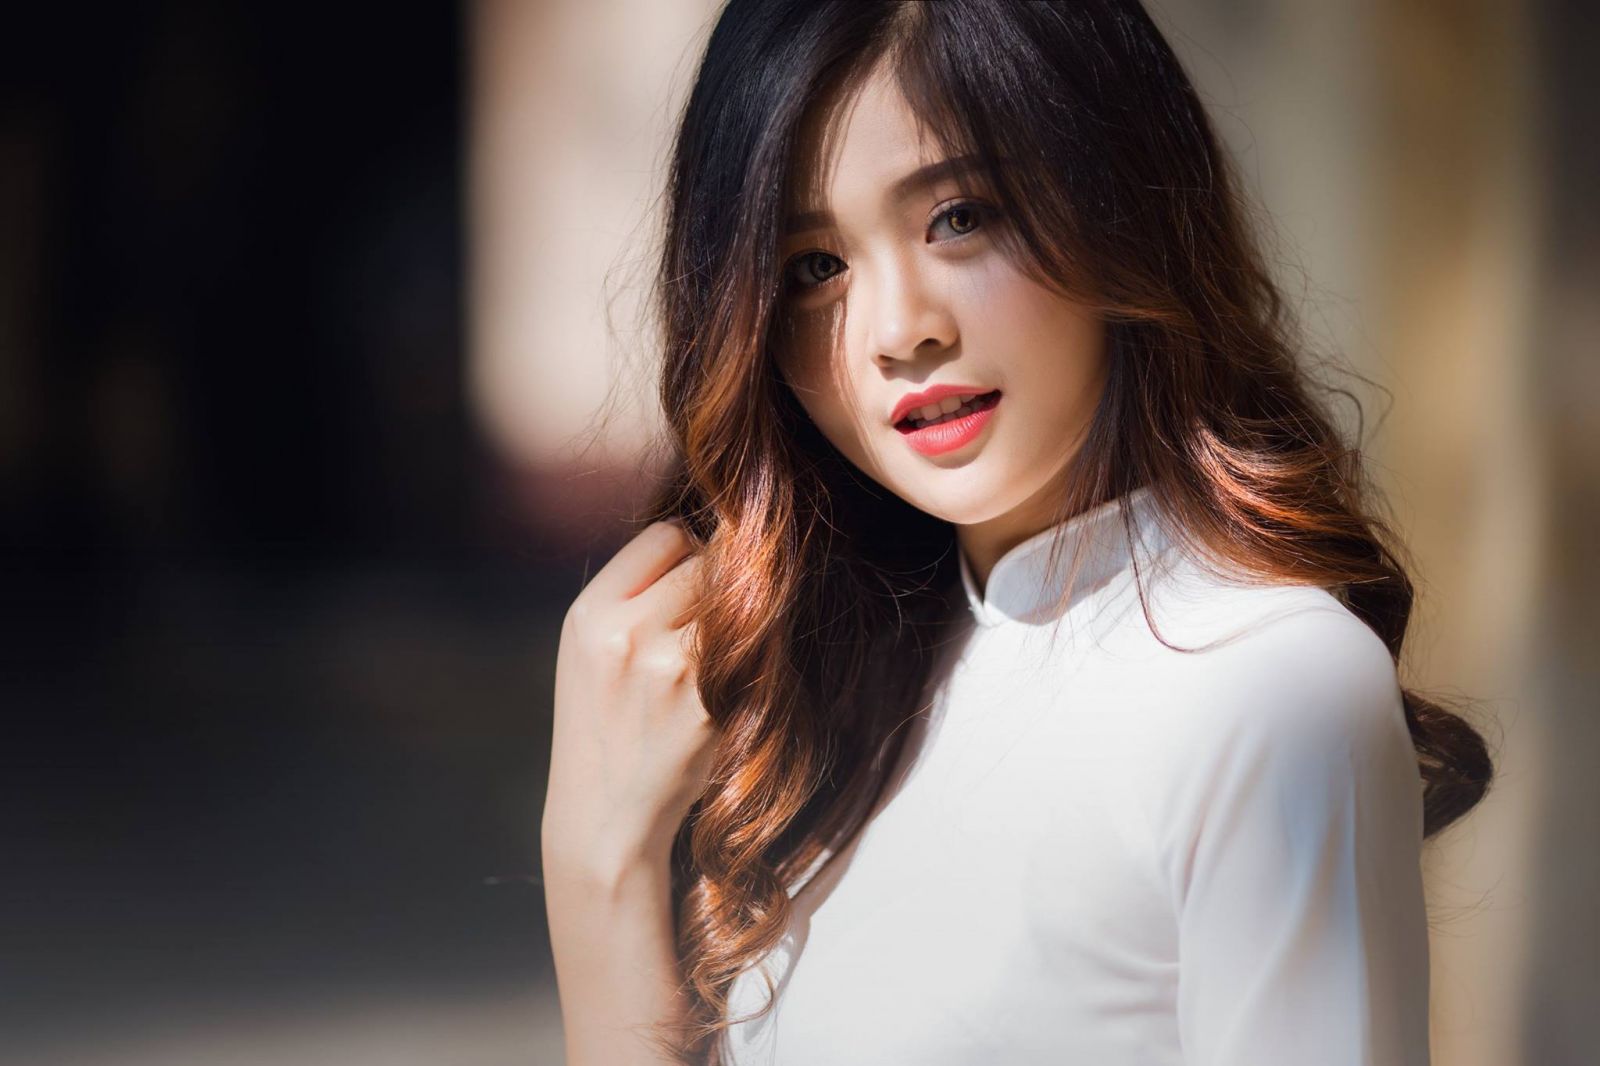 Tiêu chuẩn nào cho một mái tóc đẹp đúng chuẩn con gái Việt?